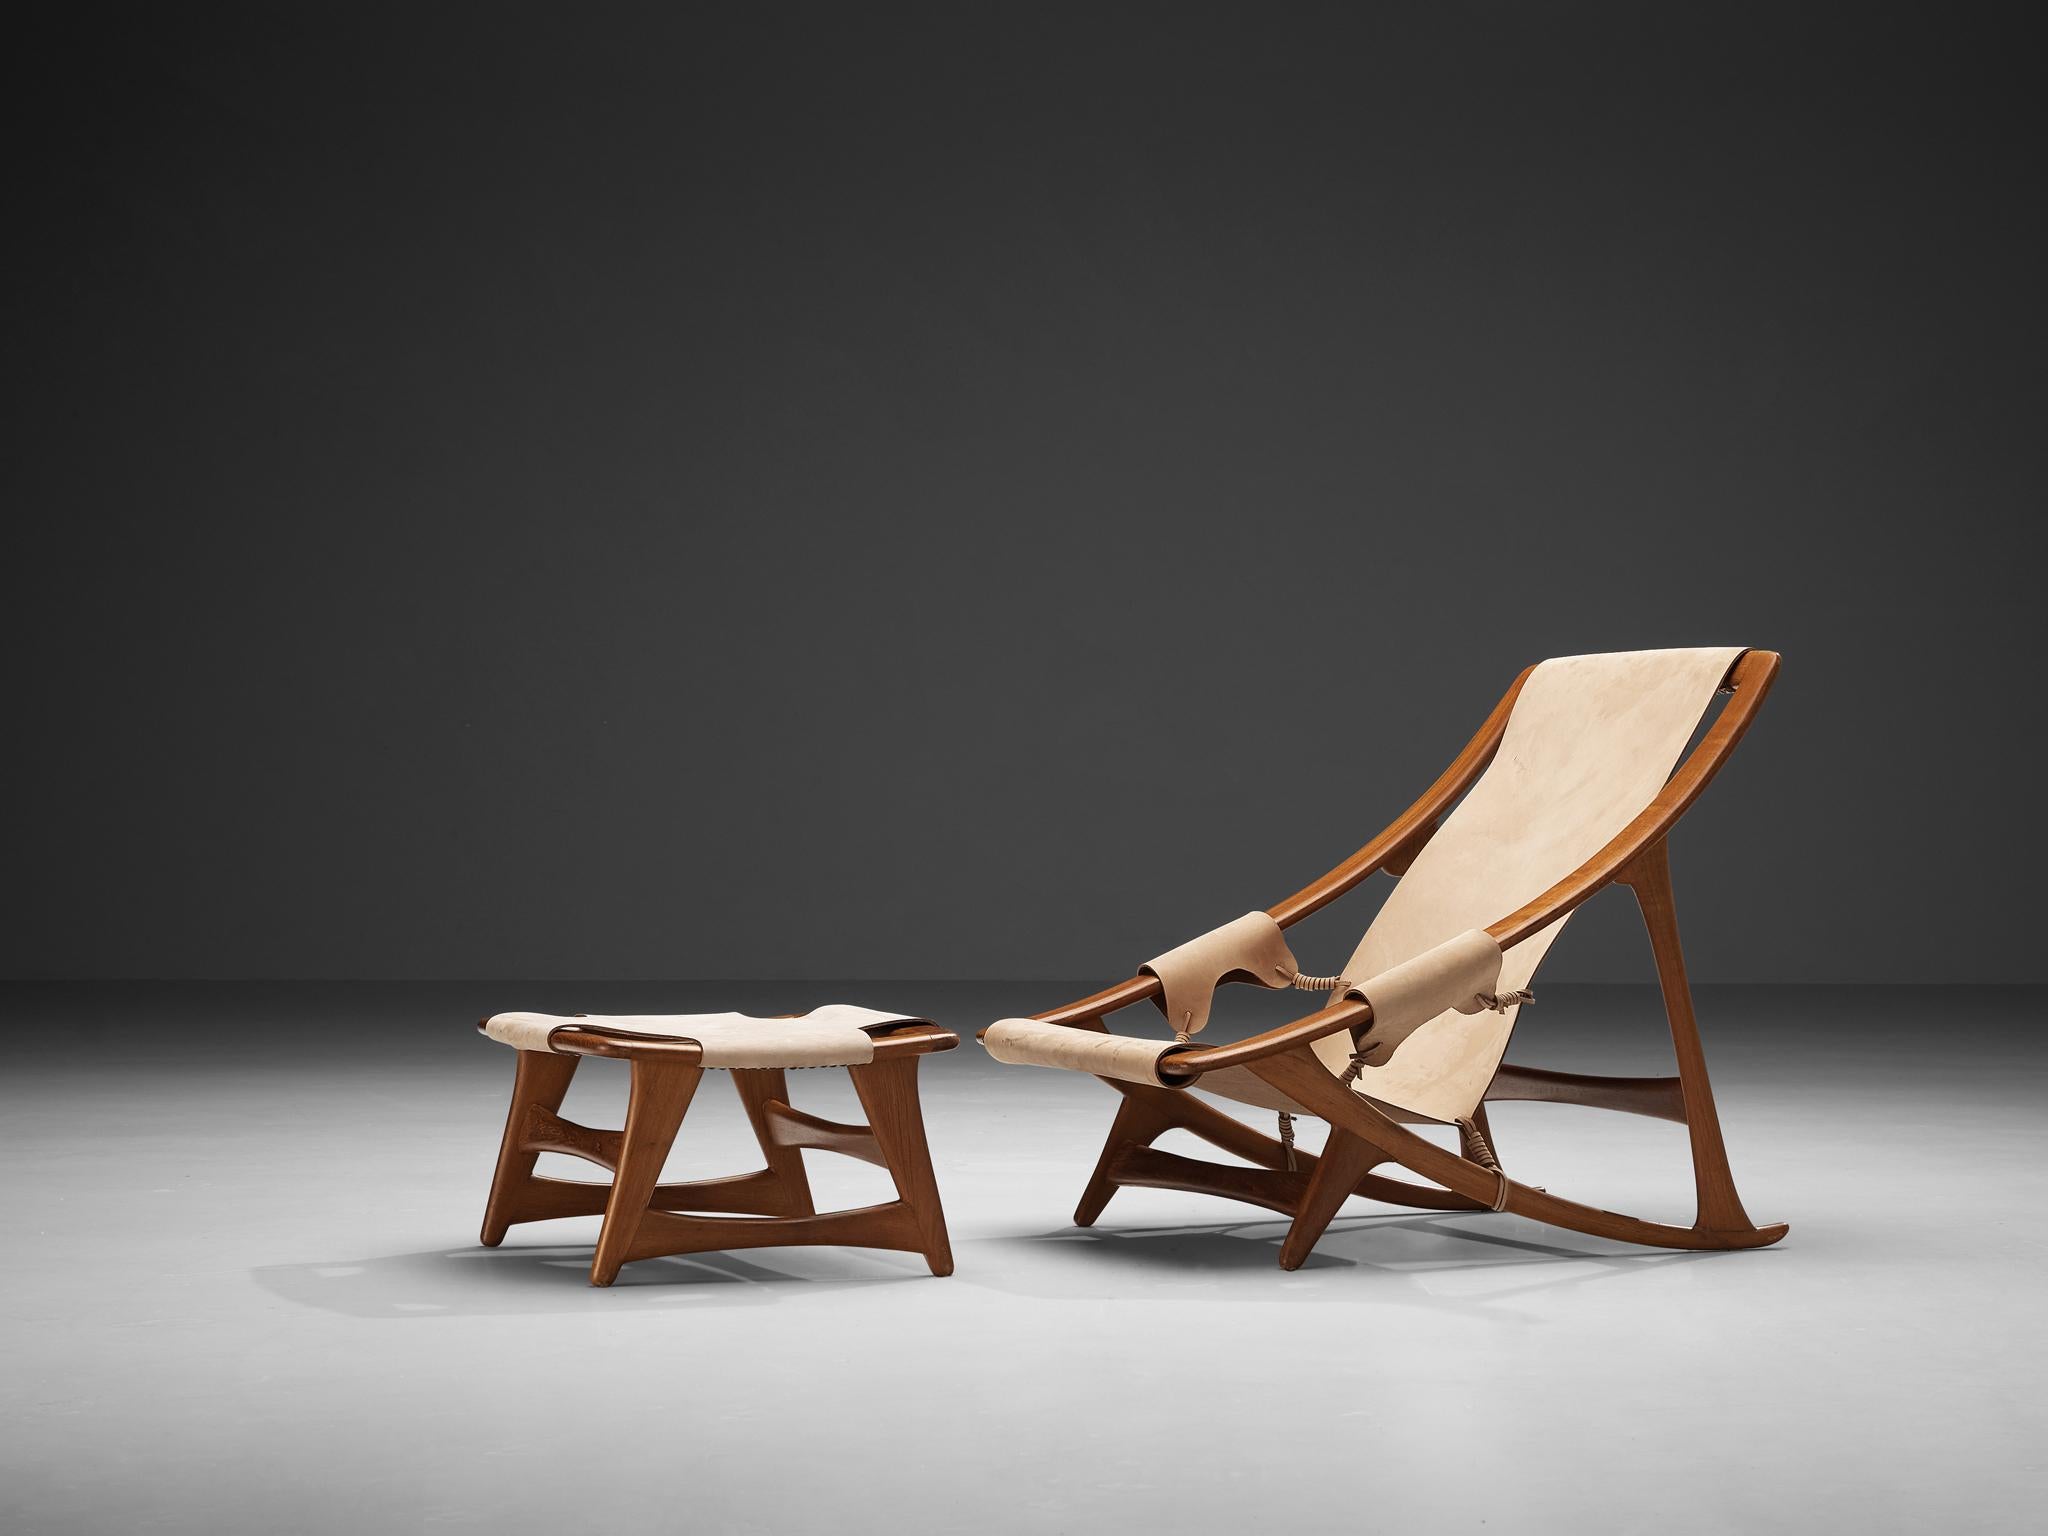 W.D. Andersag, chaise longue et ottoman, bois, cuir, Italie, années 1960.

Conçu par W.D. Andersag dans les années 1960, ce fauteuil et cet ottoman exquis adoptent une esthétique dynamique caractérisée par des lignes nettes dans leur cadre en bois.